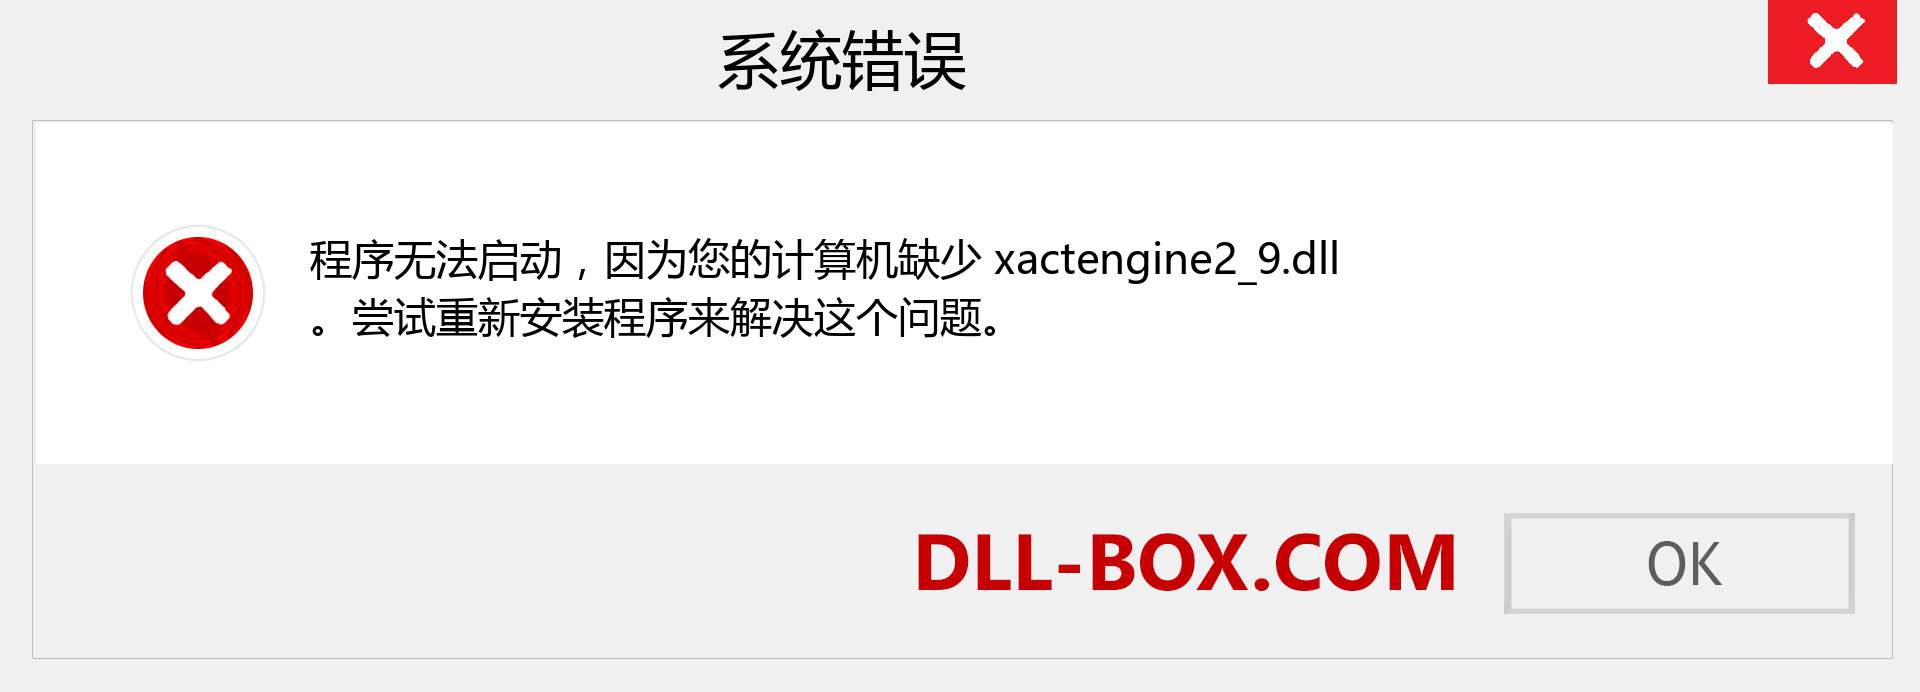 xactengine2_9.dll 文件丢失？。 适用于 Windows 7、8、10 的下载 - 修复 Windows、照片、图像上的 xactengine2_9 dll 丢失错误